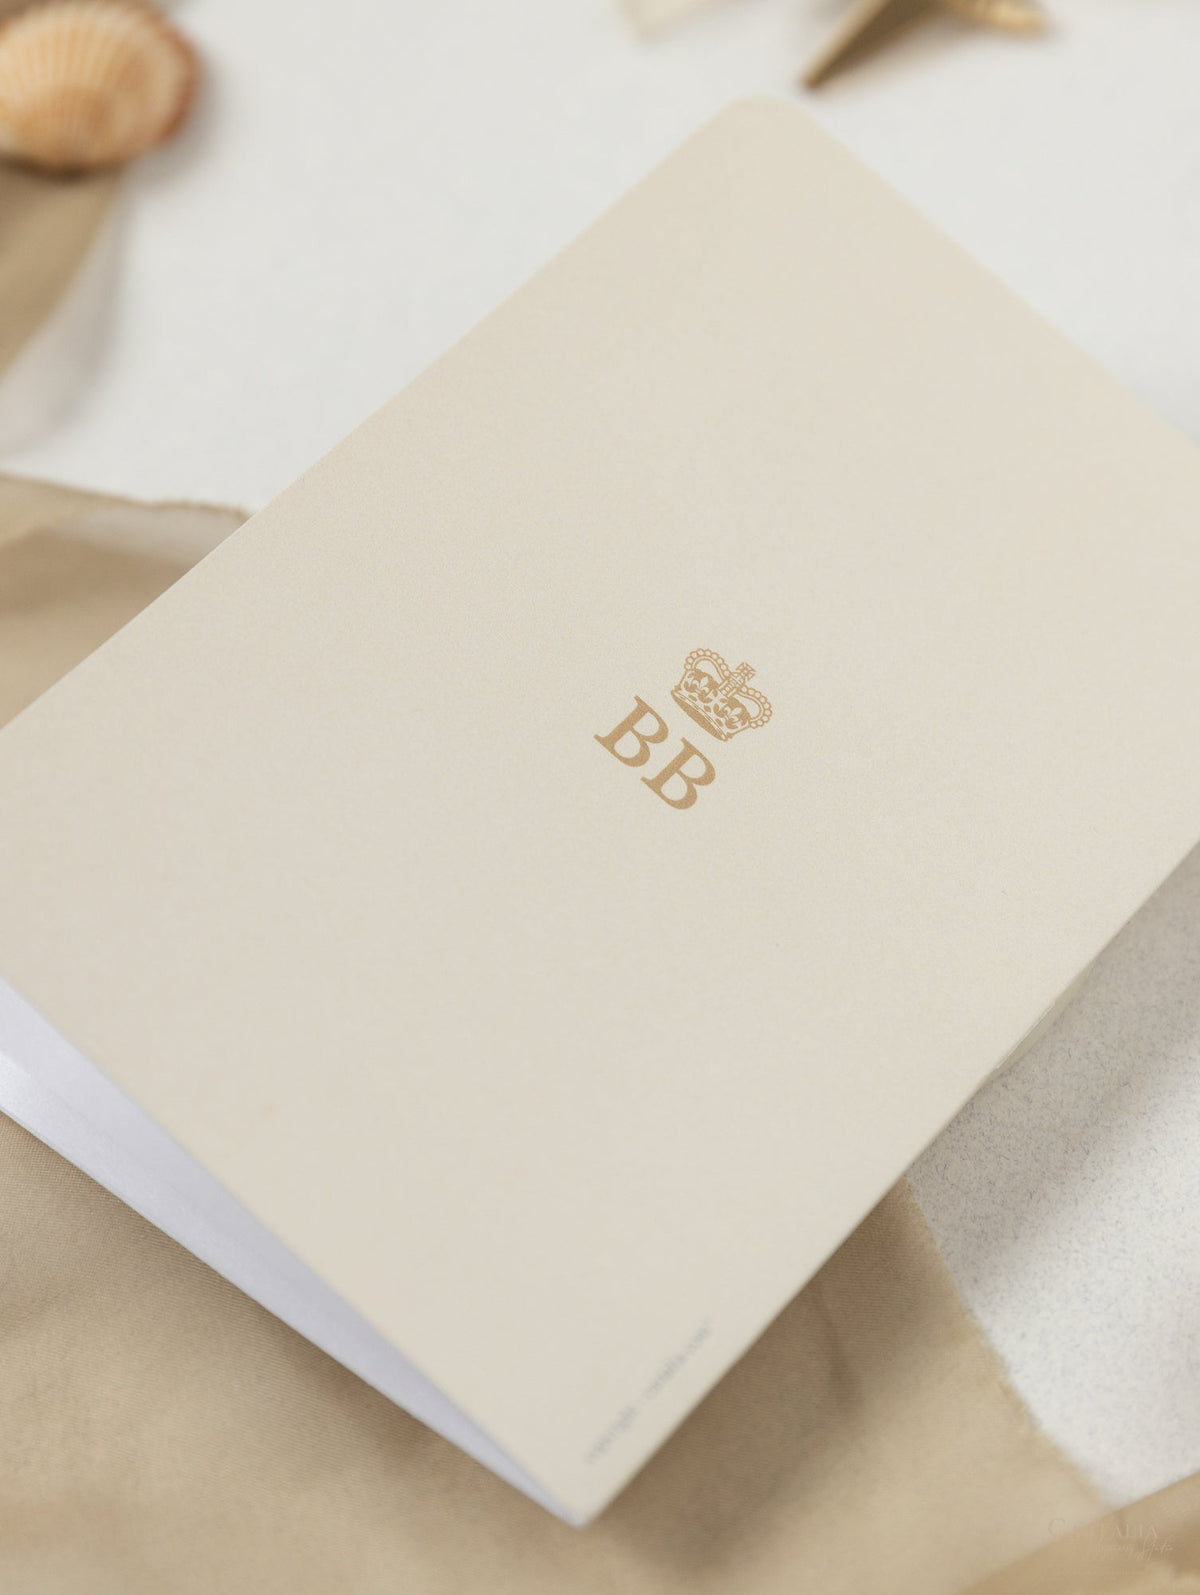 Invitación de boda con pasaporte desnudo y dorado - Avión grabado de lujo en plexi dorado, invitación a palmera